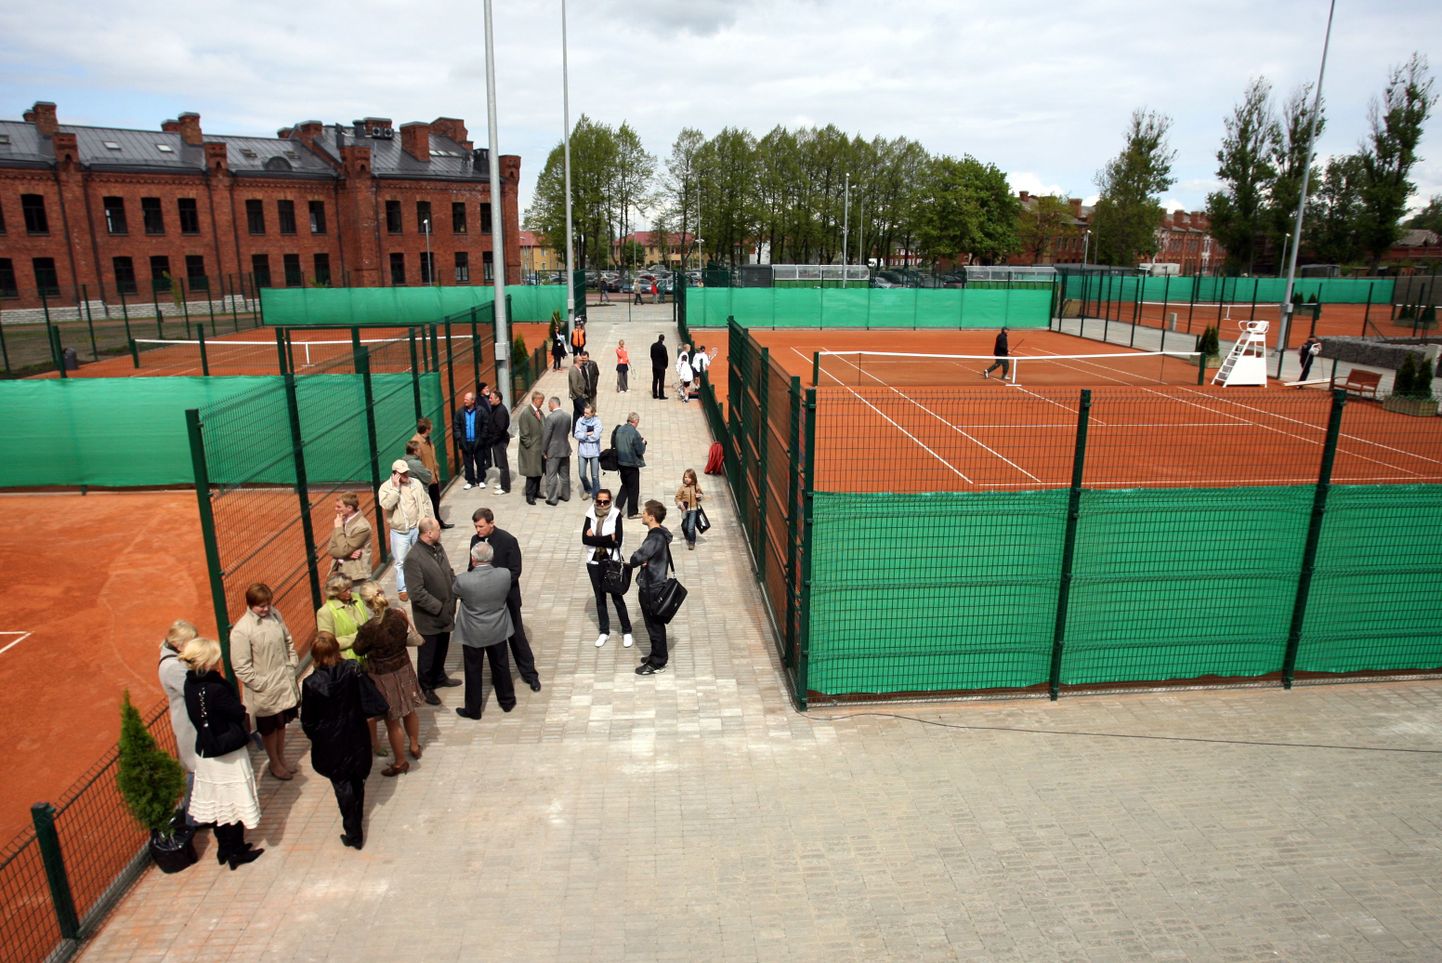 Mullus avas tenniseliit uued väljakud Tallinnas Tondi tennisekeskuses.